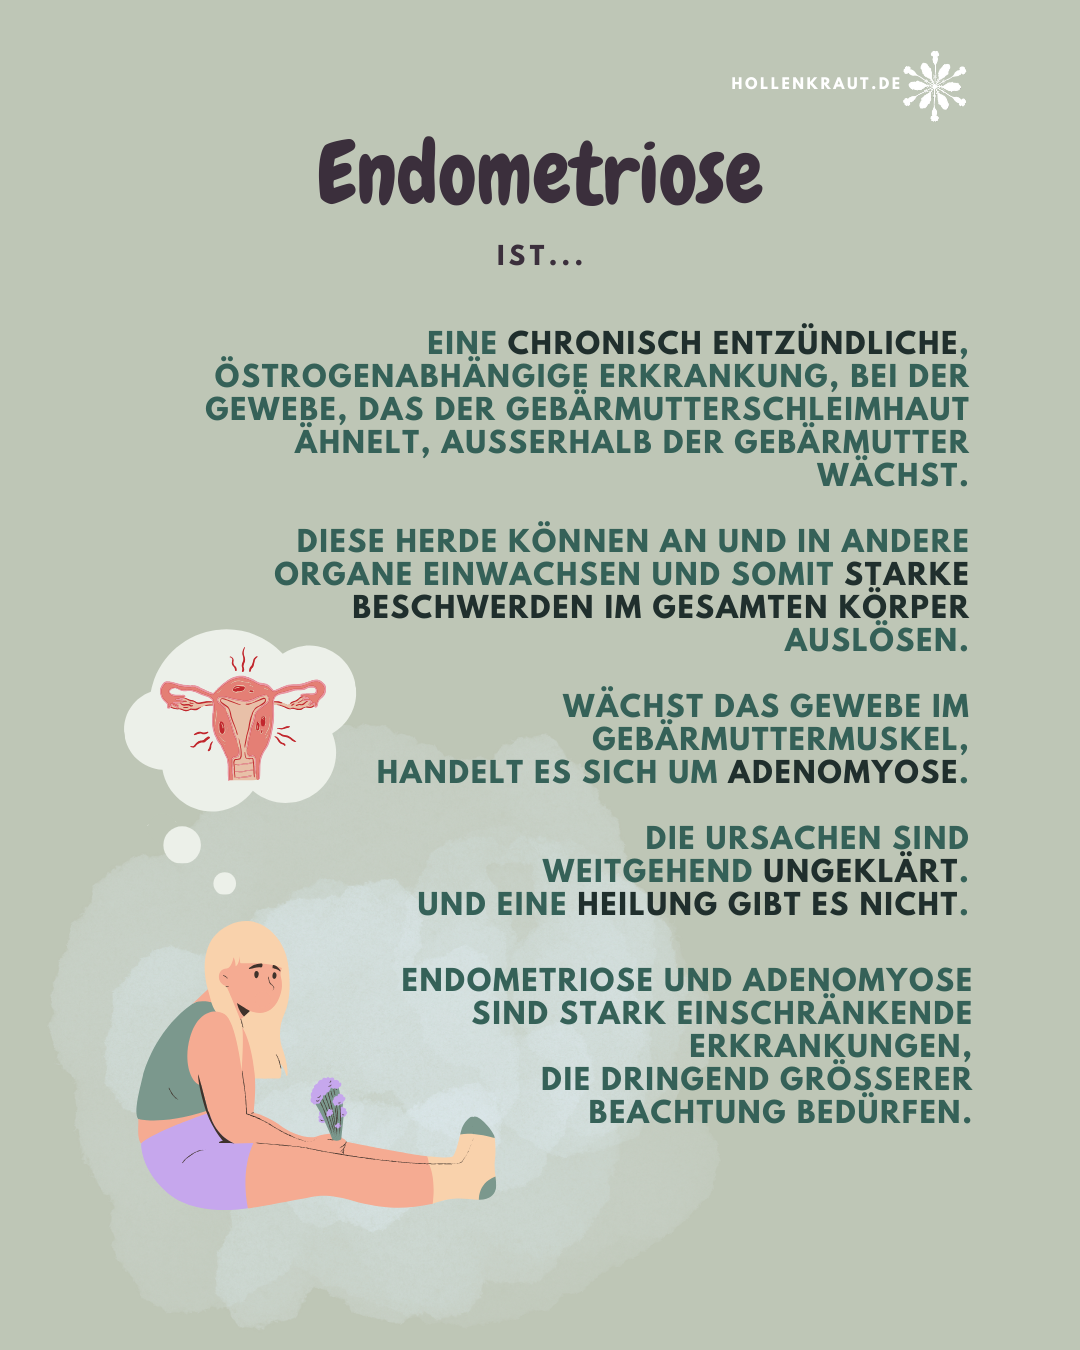 Eine in salbeigrün gehaltene Infografik mit dem Text: Endometriose ist... eine chronisch entzündliche, östrogenabhängige Erkrankung, bei der gewebe, das der Gebärmutterschleimhaut ähnelt, ausserhalb der Gebärmutter wächst. Diese Herde können an und in andere Organe einwachsen und somit starke Beschwerden im gesamten Körper auslösen. Wächst das Gewebe im Gebärmuttermuskel, handelt es sich um Adenomyose. Die Ursachen sind weitgehend ungeklärt. Und eine Heilung gibt es nicht. Endometriose und Adenomyose sind stark einschränkende Erkrankungen, die dringend grösserer Beachtung bedürfen.